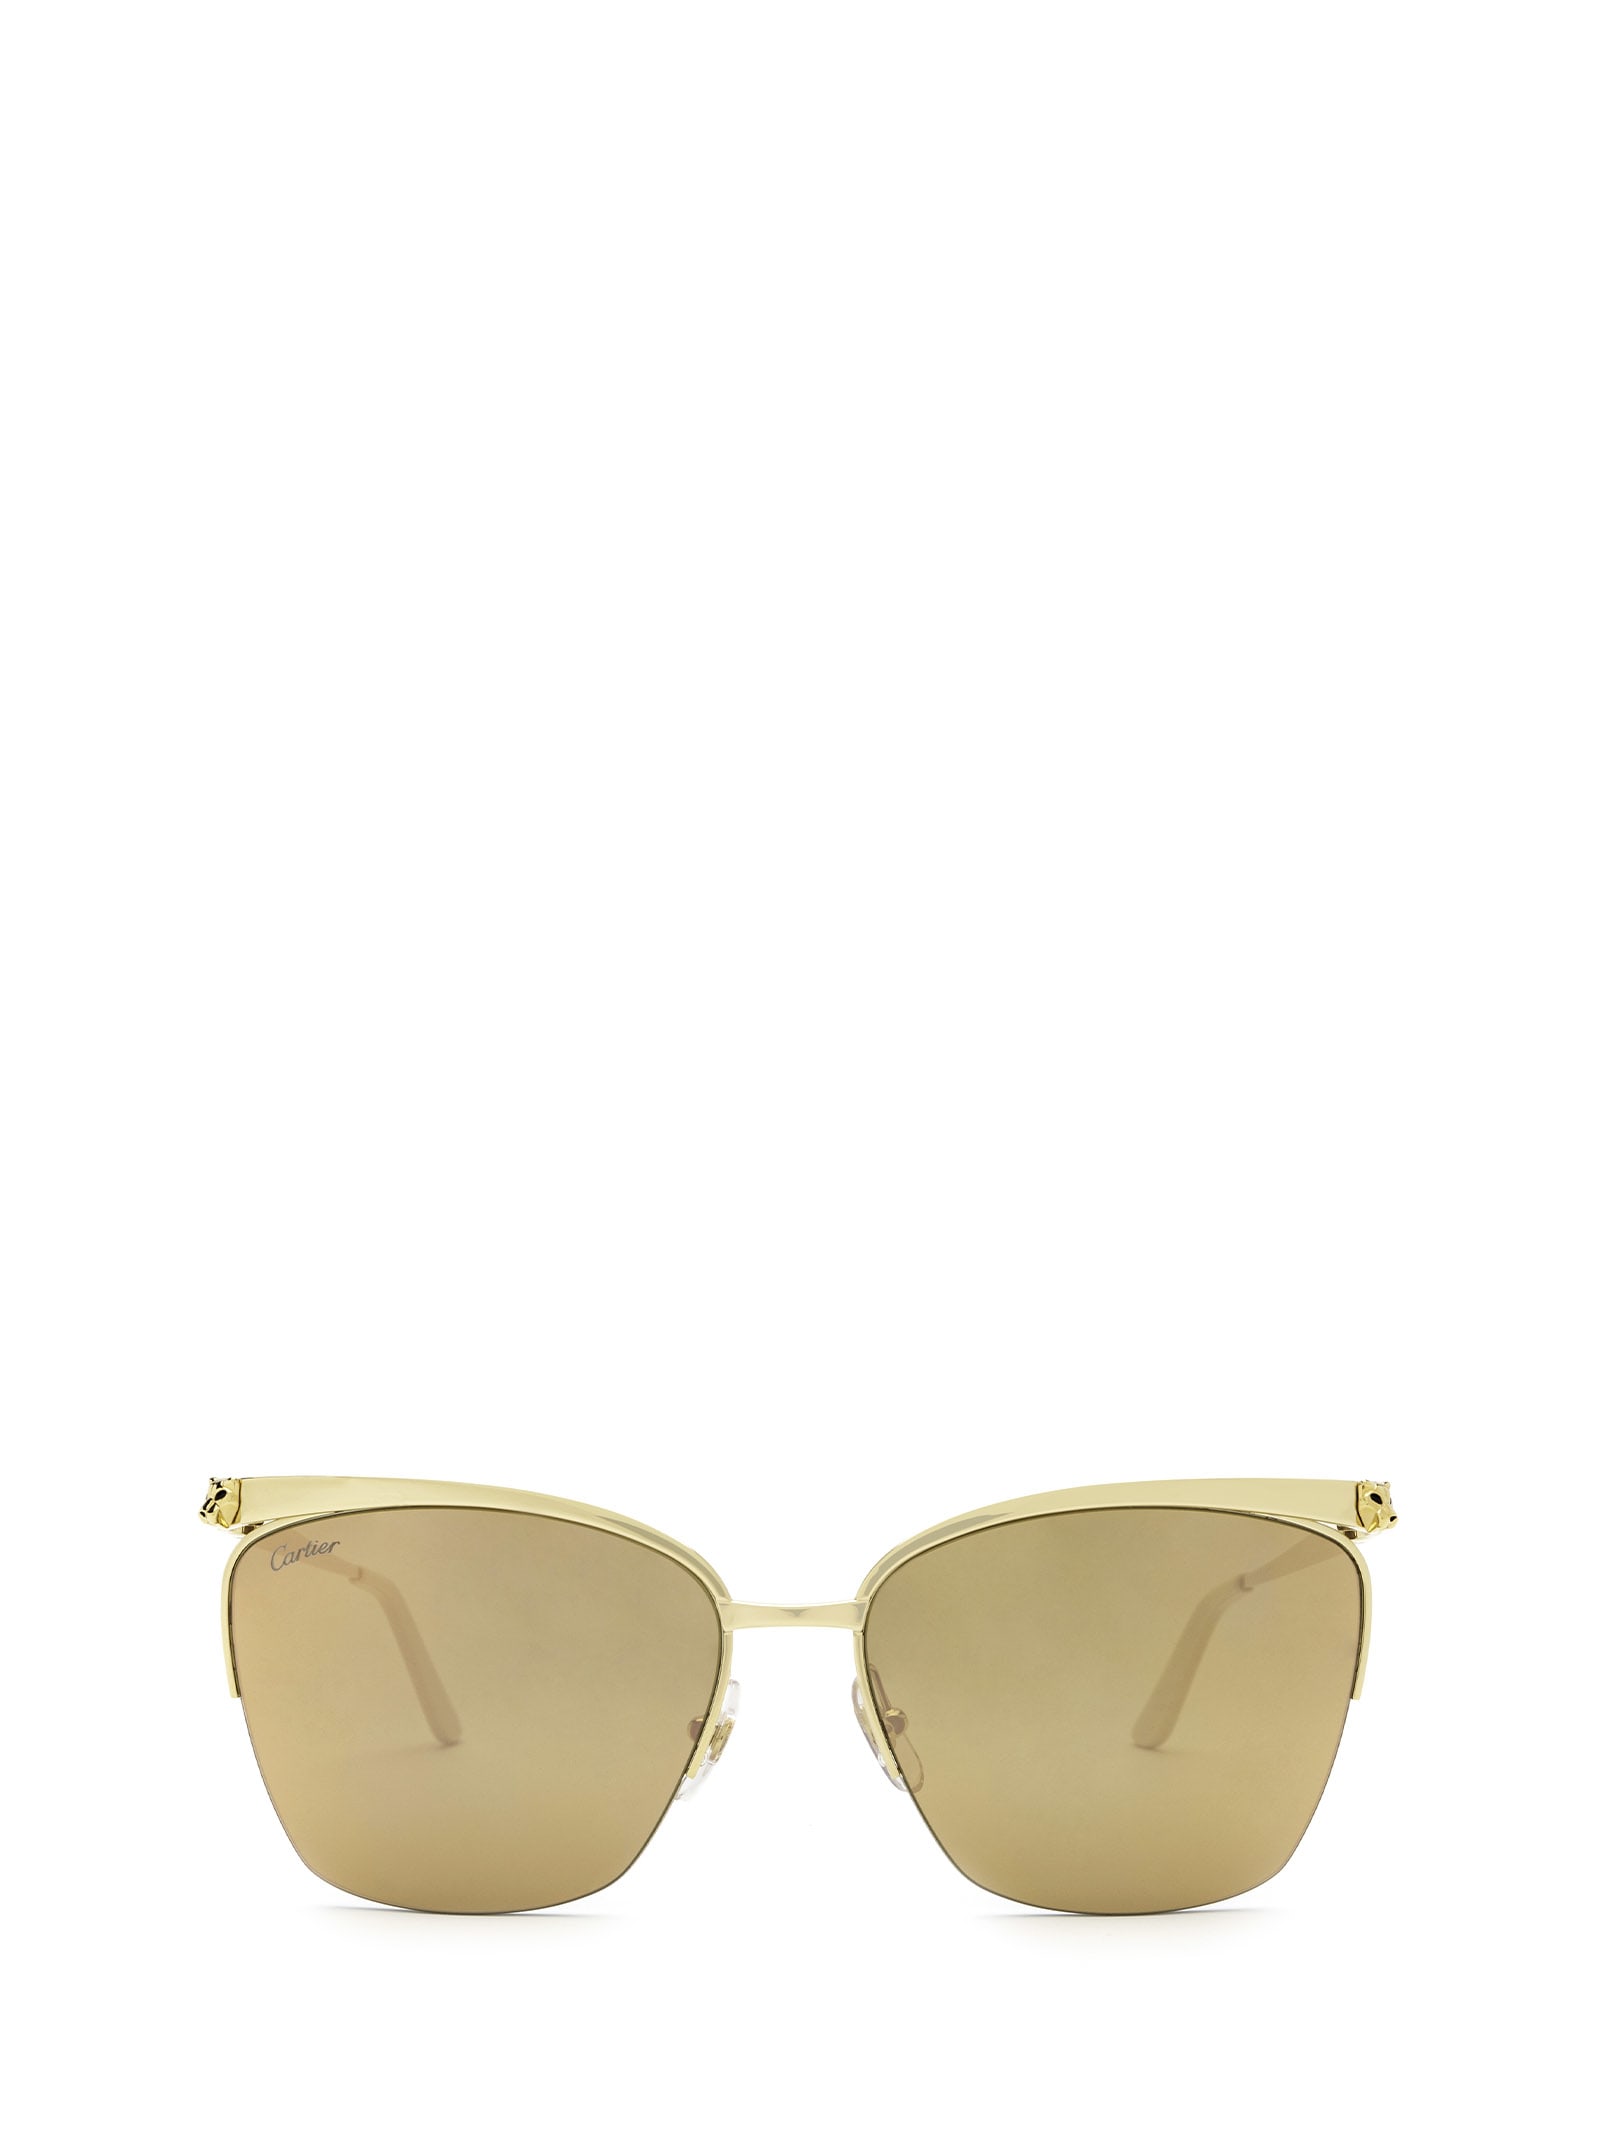 Cartier Eyewear Cartier Ct0124s Gold Sunglasses